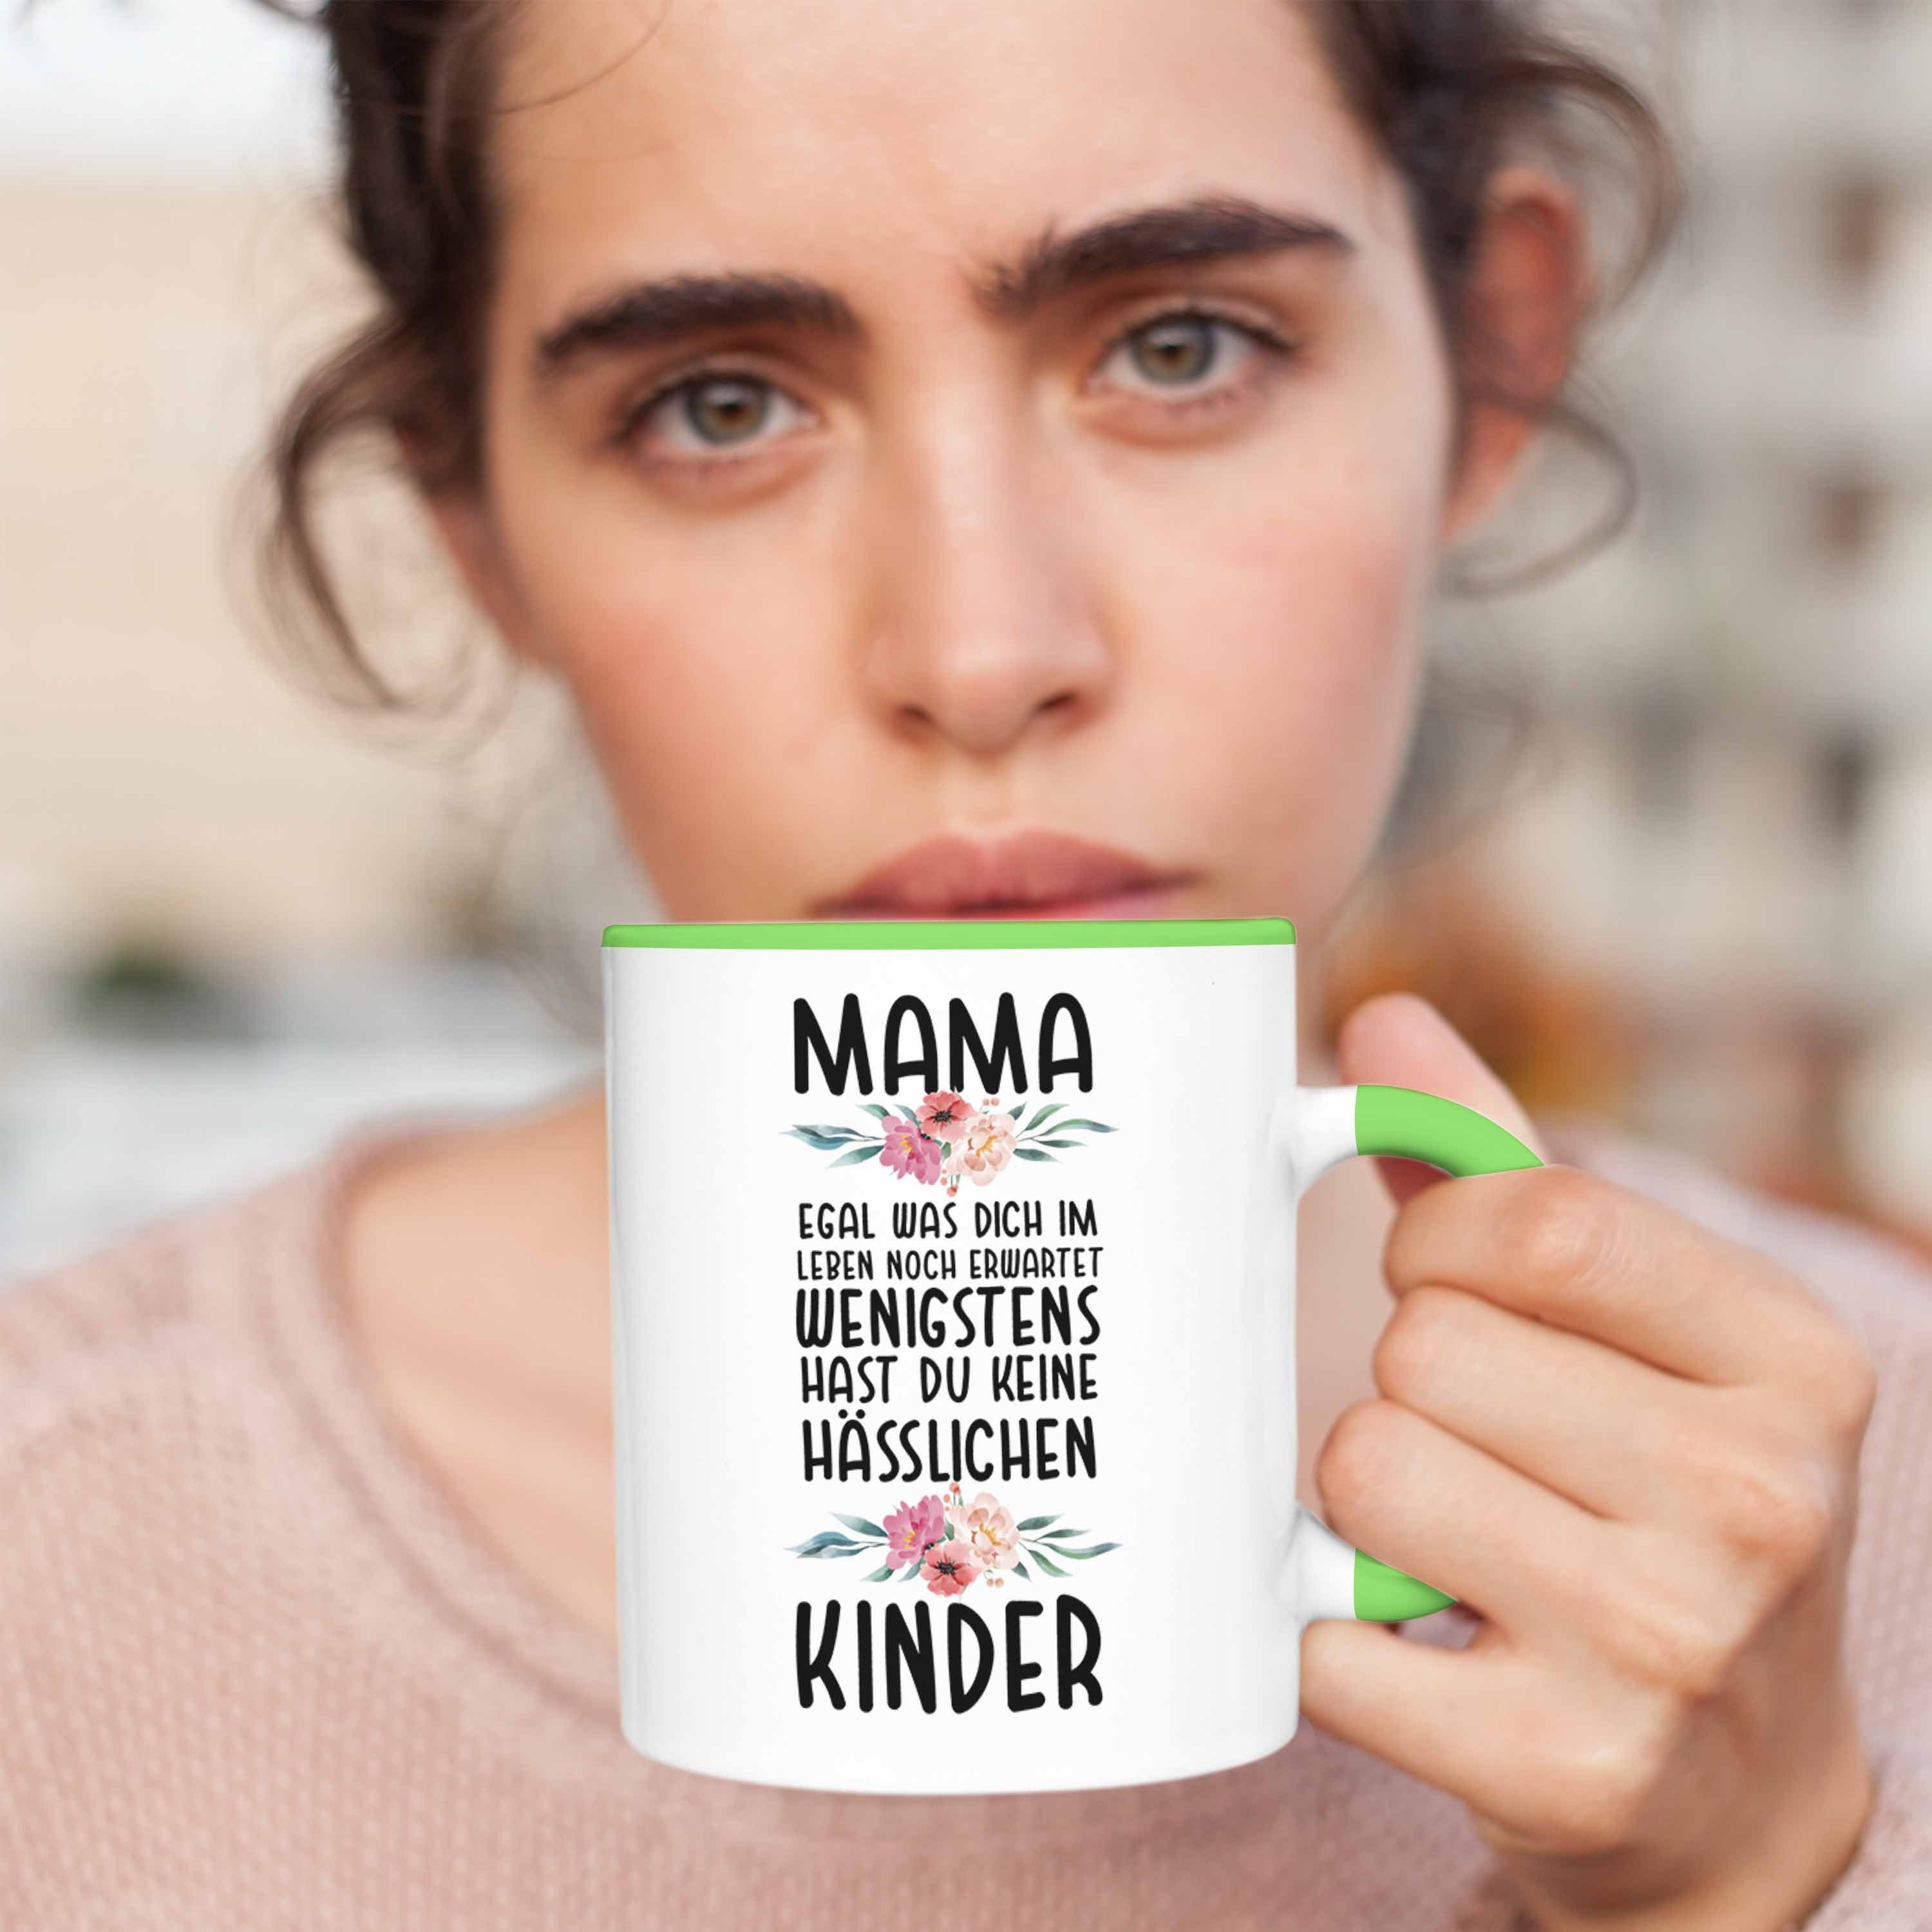 von Spruch Grün - Geburtstag Tasse Tasse Muttertag Mami Mama Kinder Hässliche Geschenk Kinder Mutter Trendation Trendation